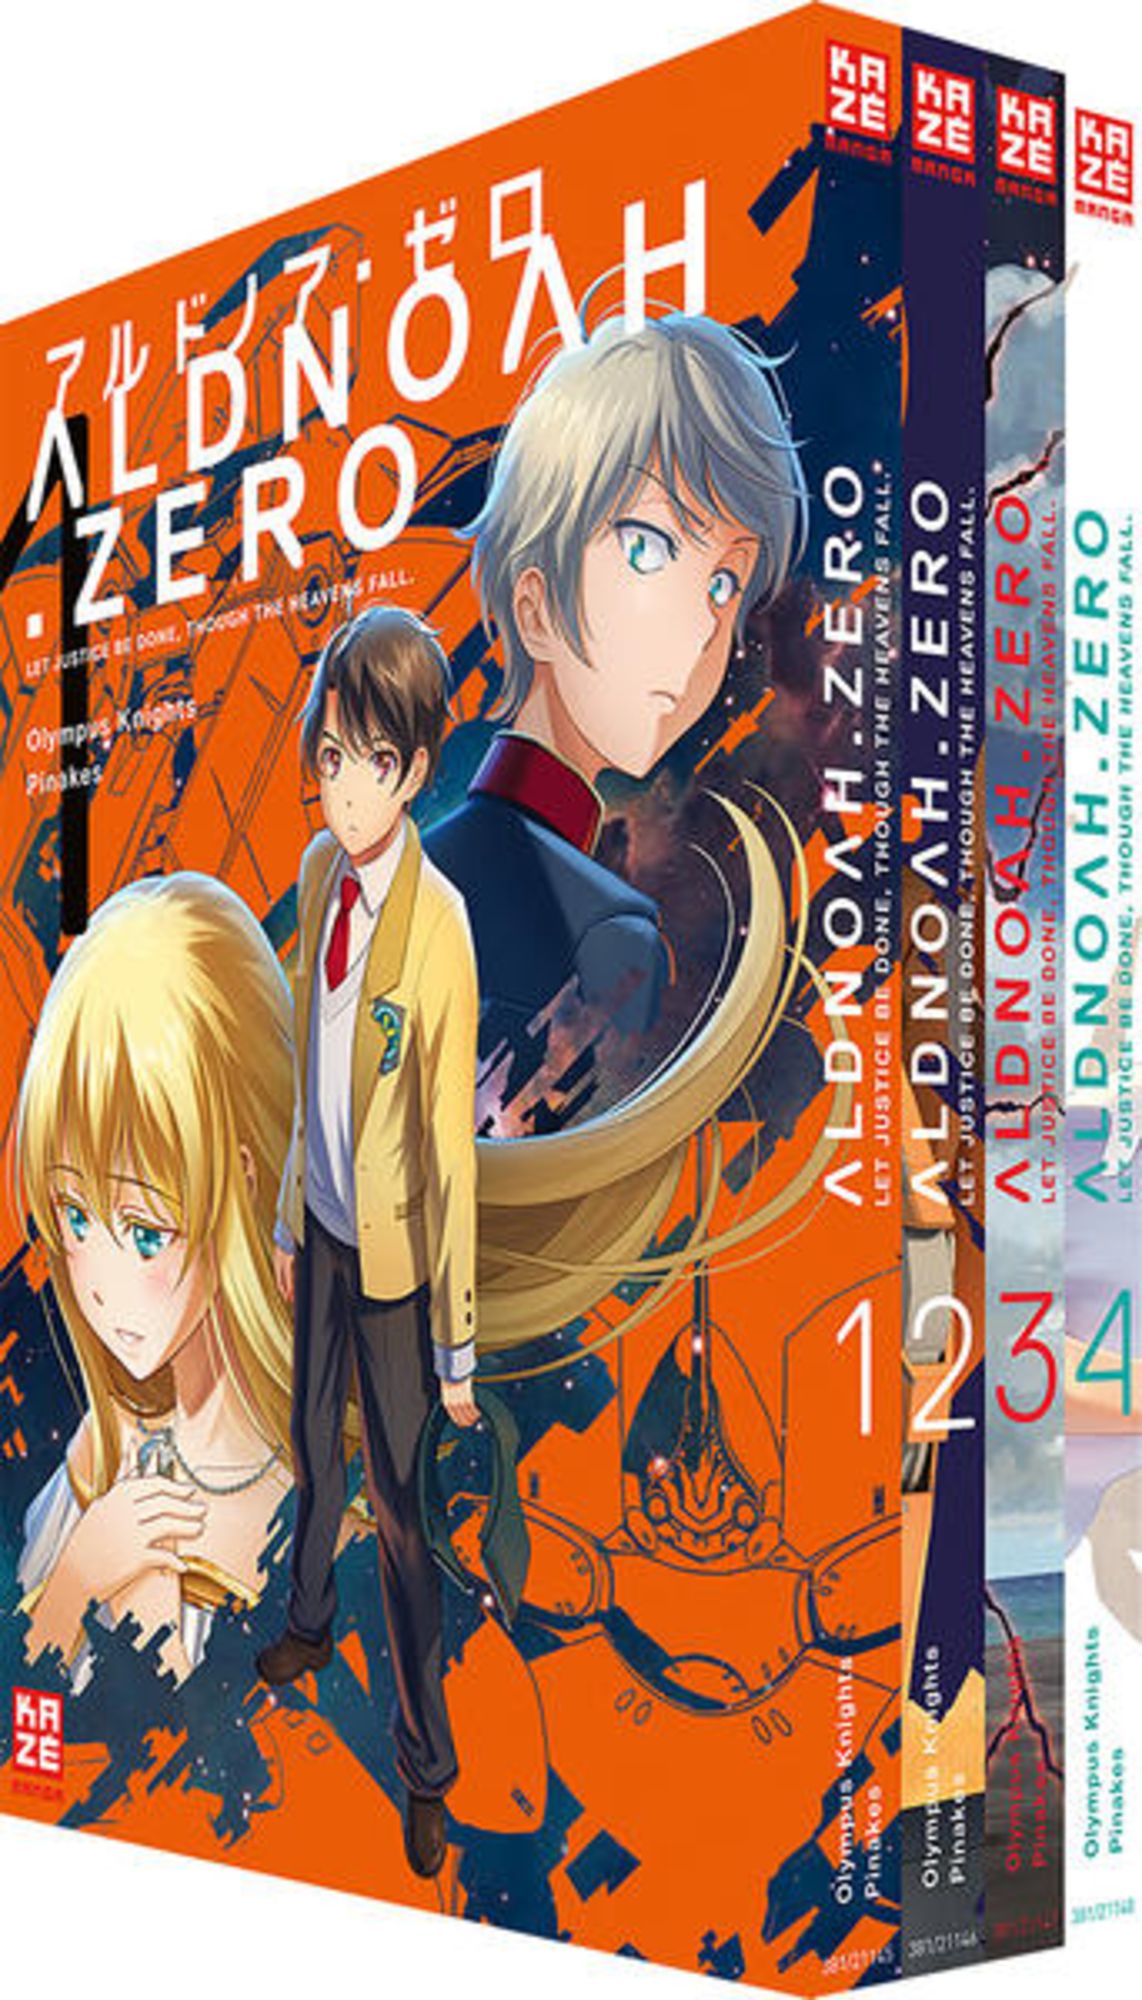 Aldnoah.Zero Season One, Vol. 3 Manga eBook by Olympus Knights - EPUB Book